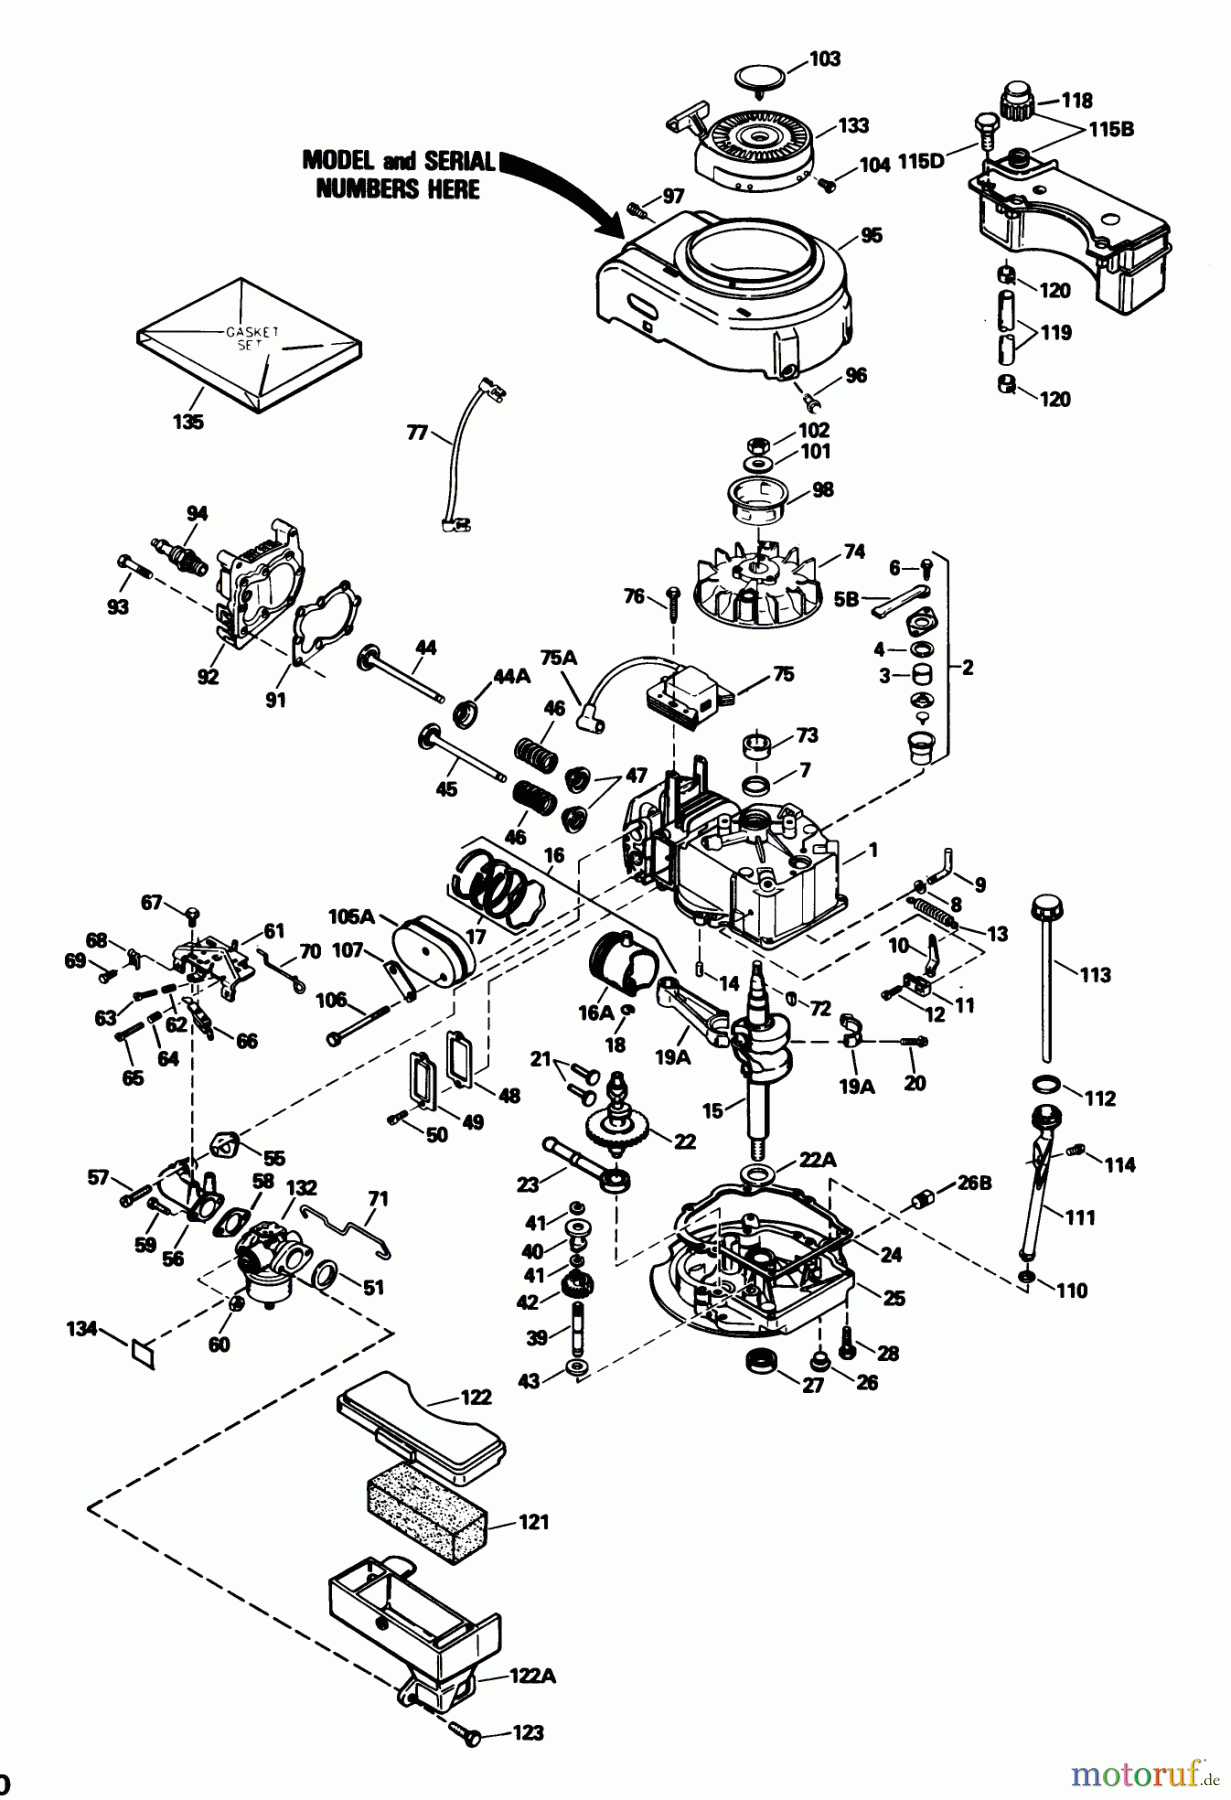  Toro Neu Mowers, Walk-Behind Seite 1 20532 - Toro Lawnmower, 1989 (9000001-9999999) ENGINE MODEL NO. TVS105-53113F